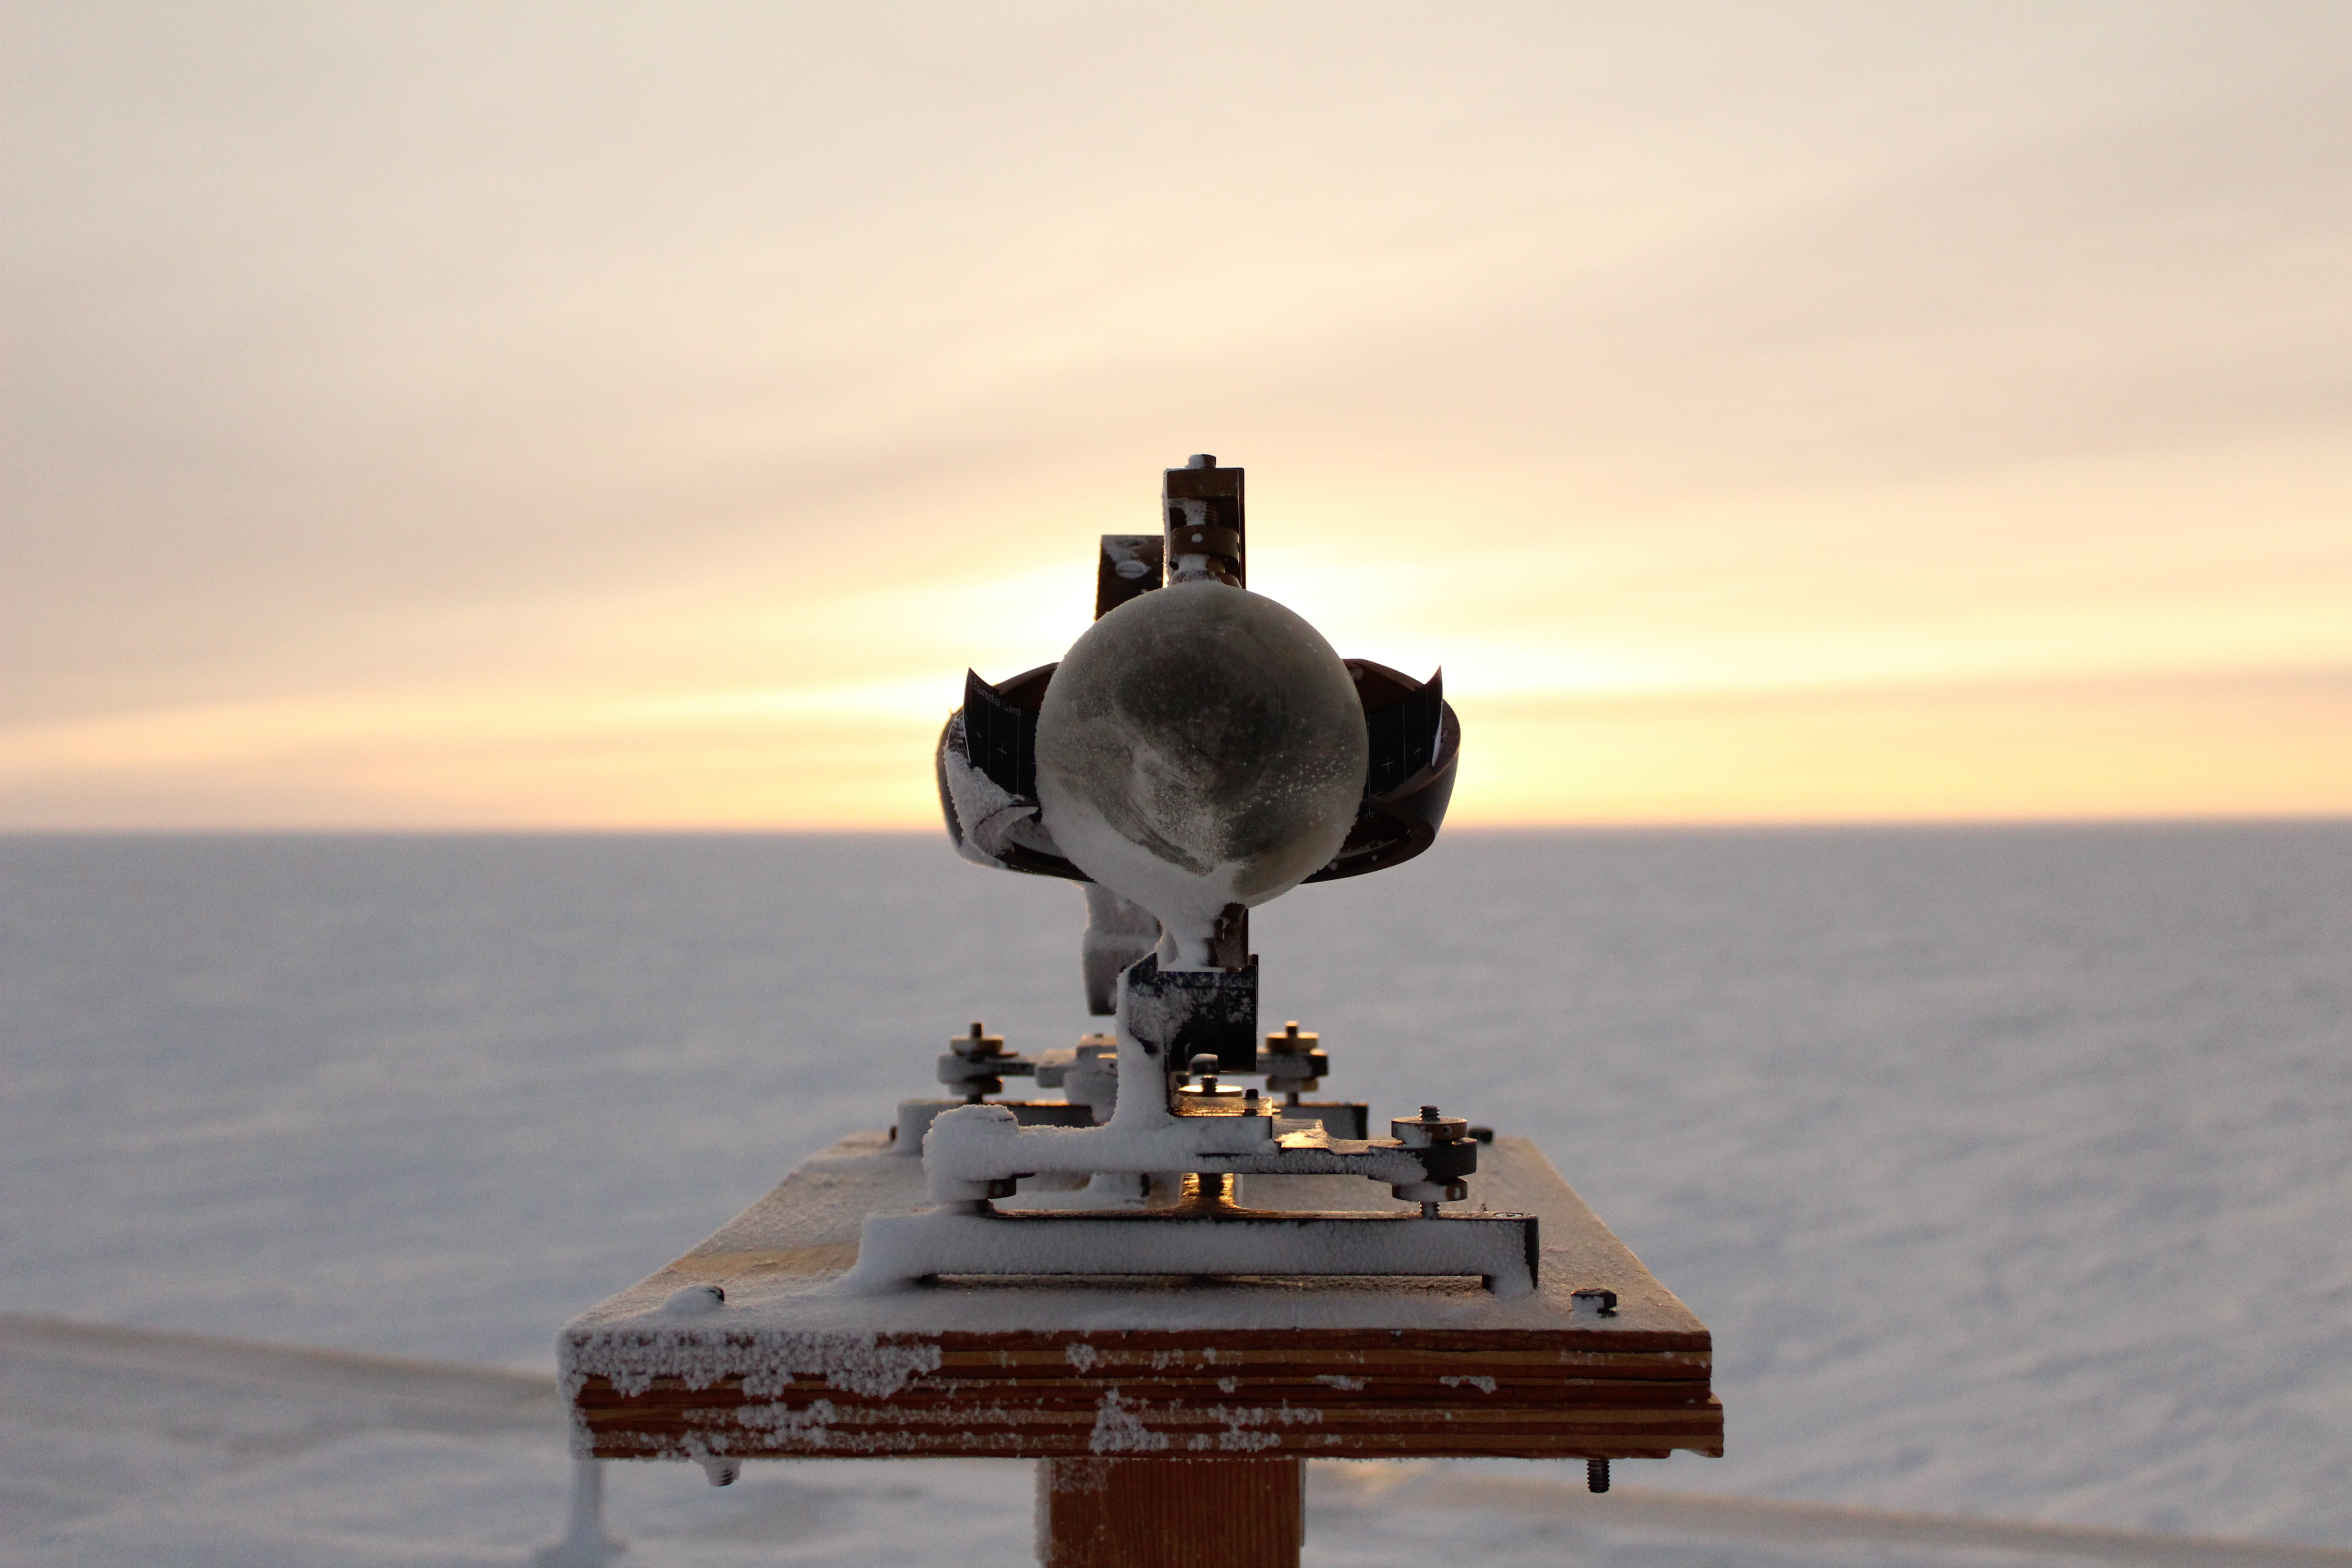 Scientific equipment in front of the sunrise.